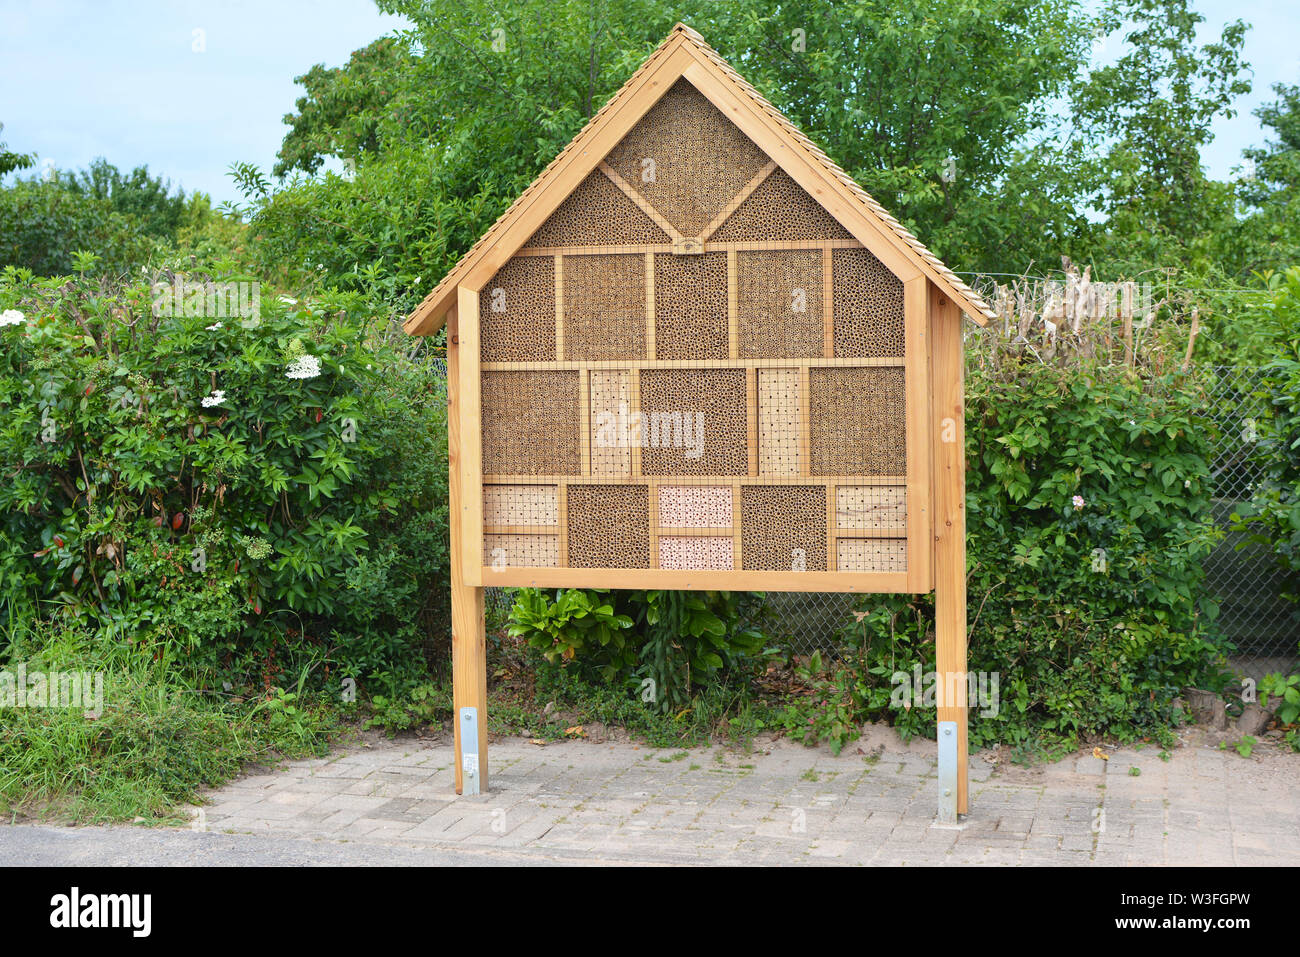 Insectes de Big wood house hotel structure créée pour fournir un abri pour les insectes comme les abeilles pour empêcher l'extinction Banque D'Images